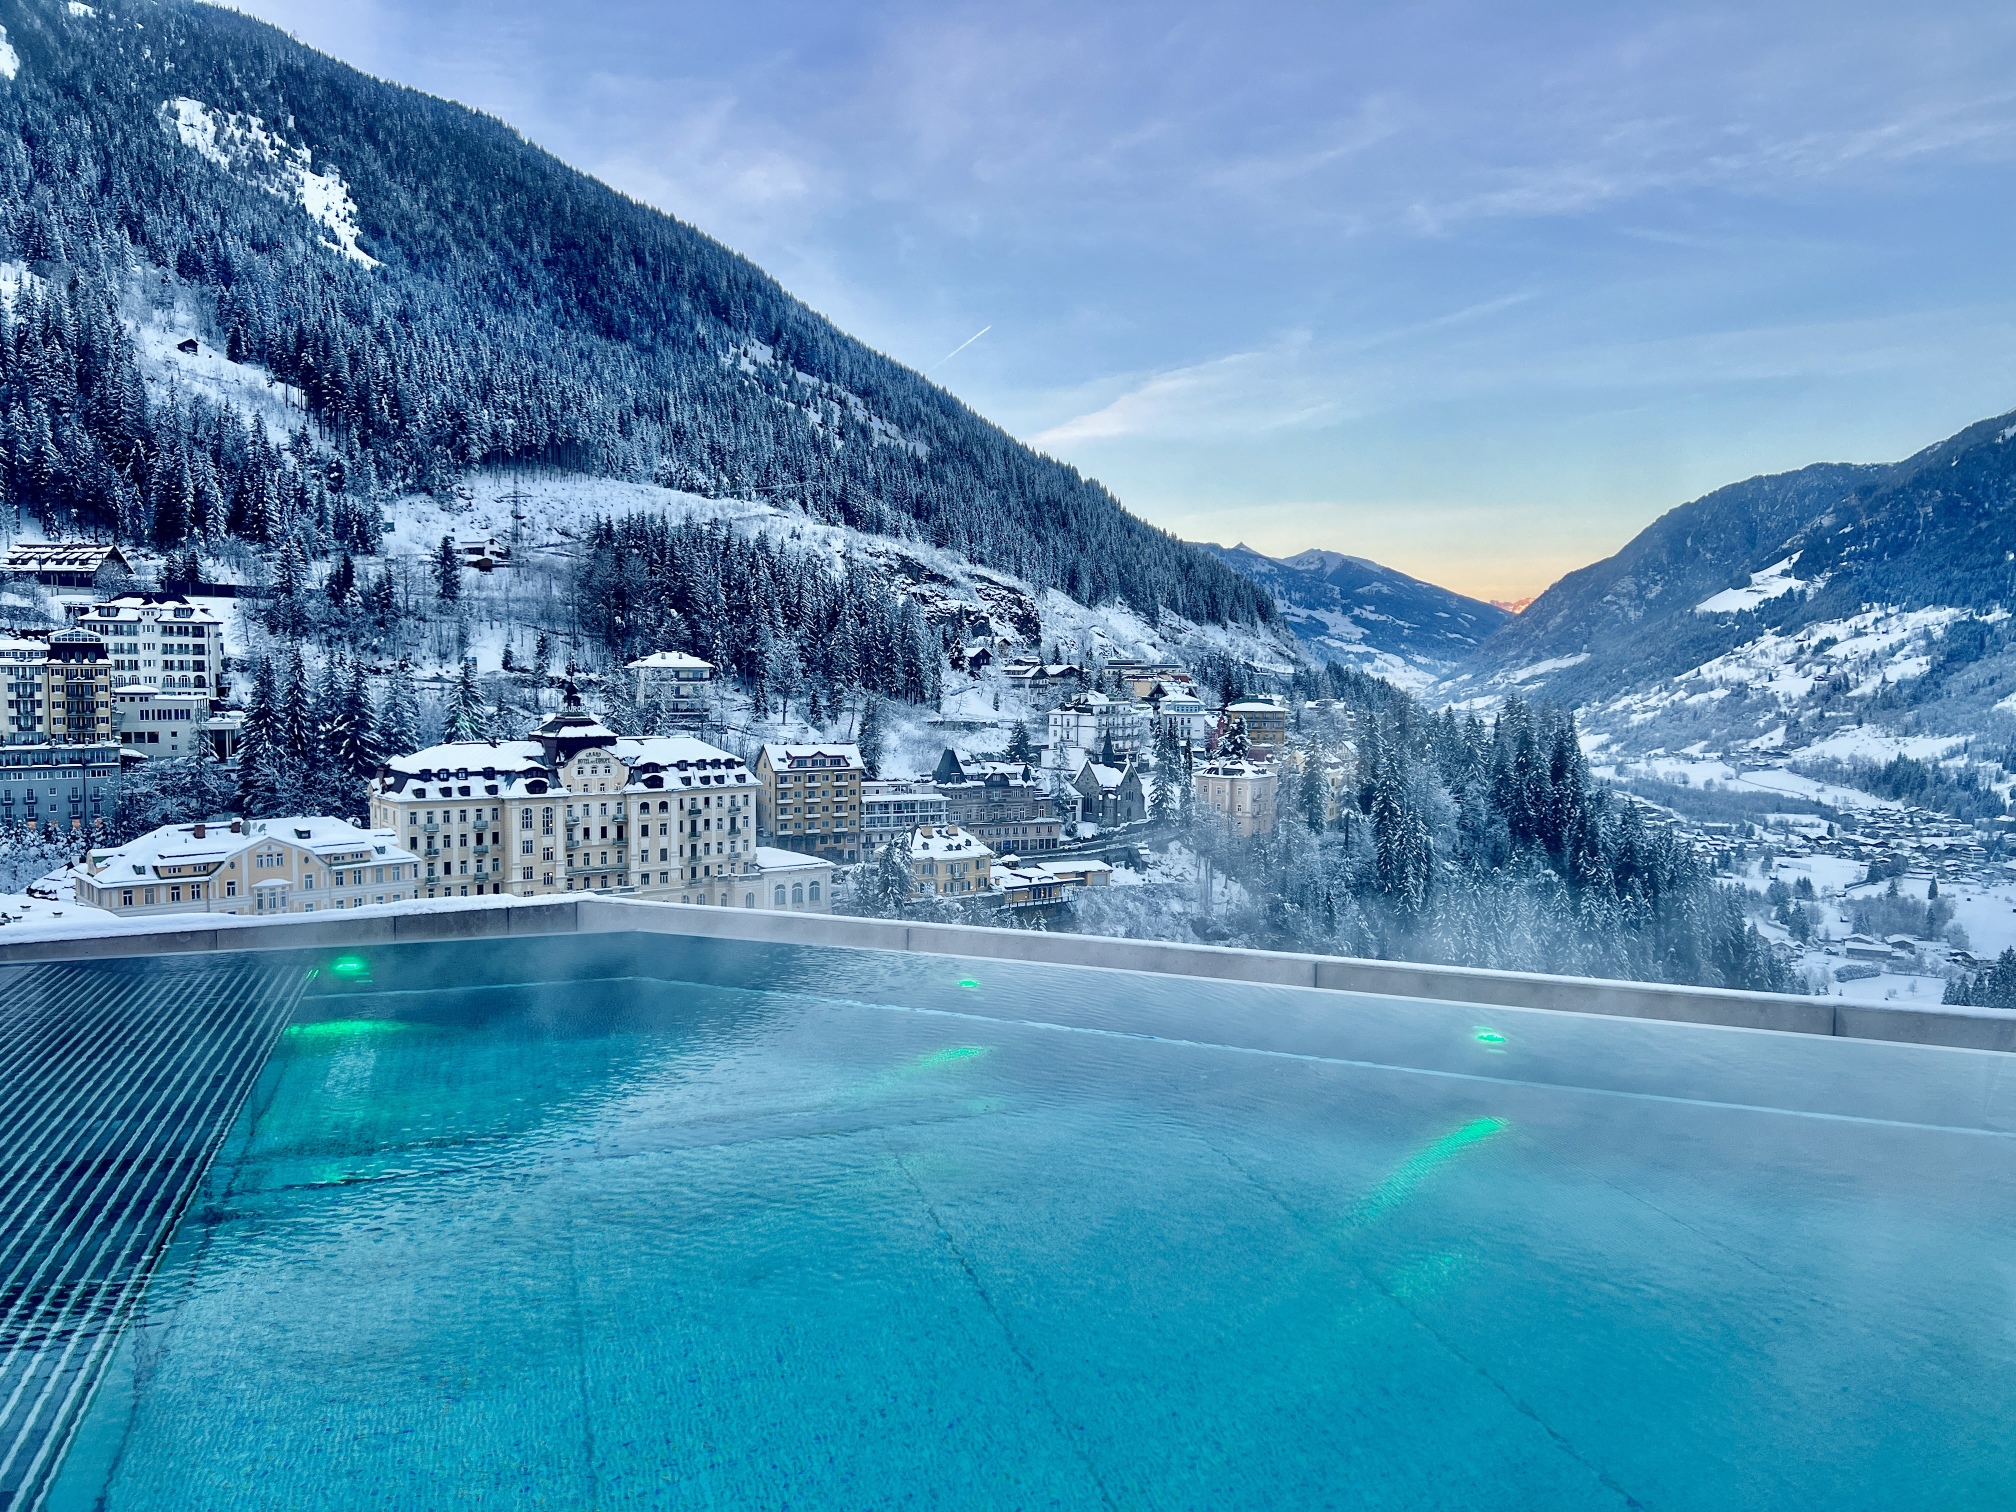 Inmitten eines schneebedeckten Berges sticht ein Badeschloss mit moderner Eleganz hervor.